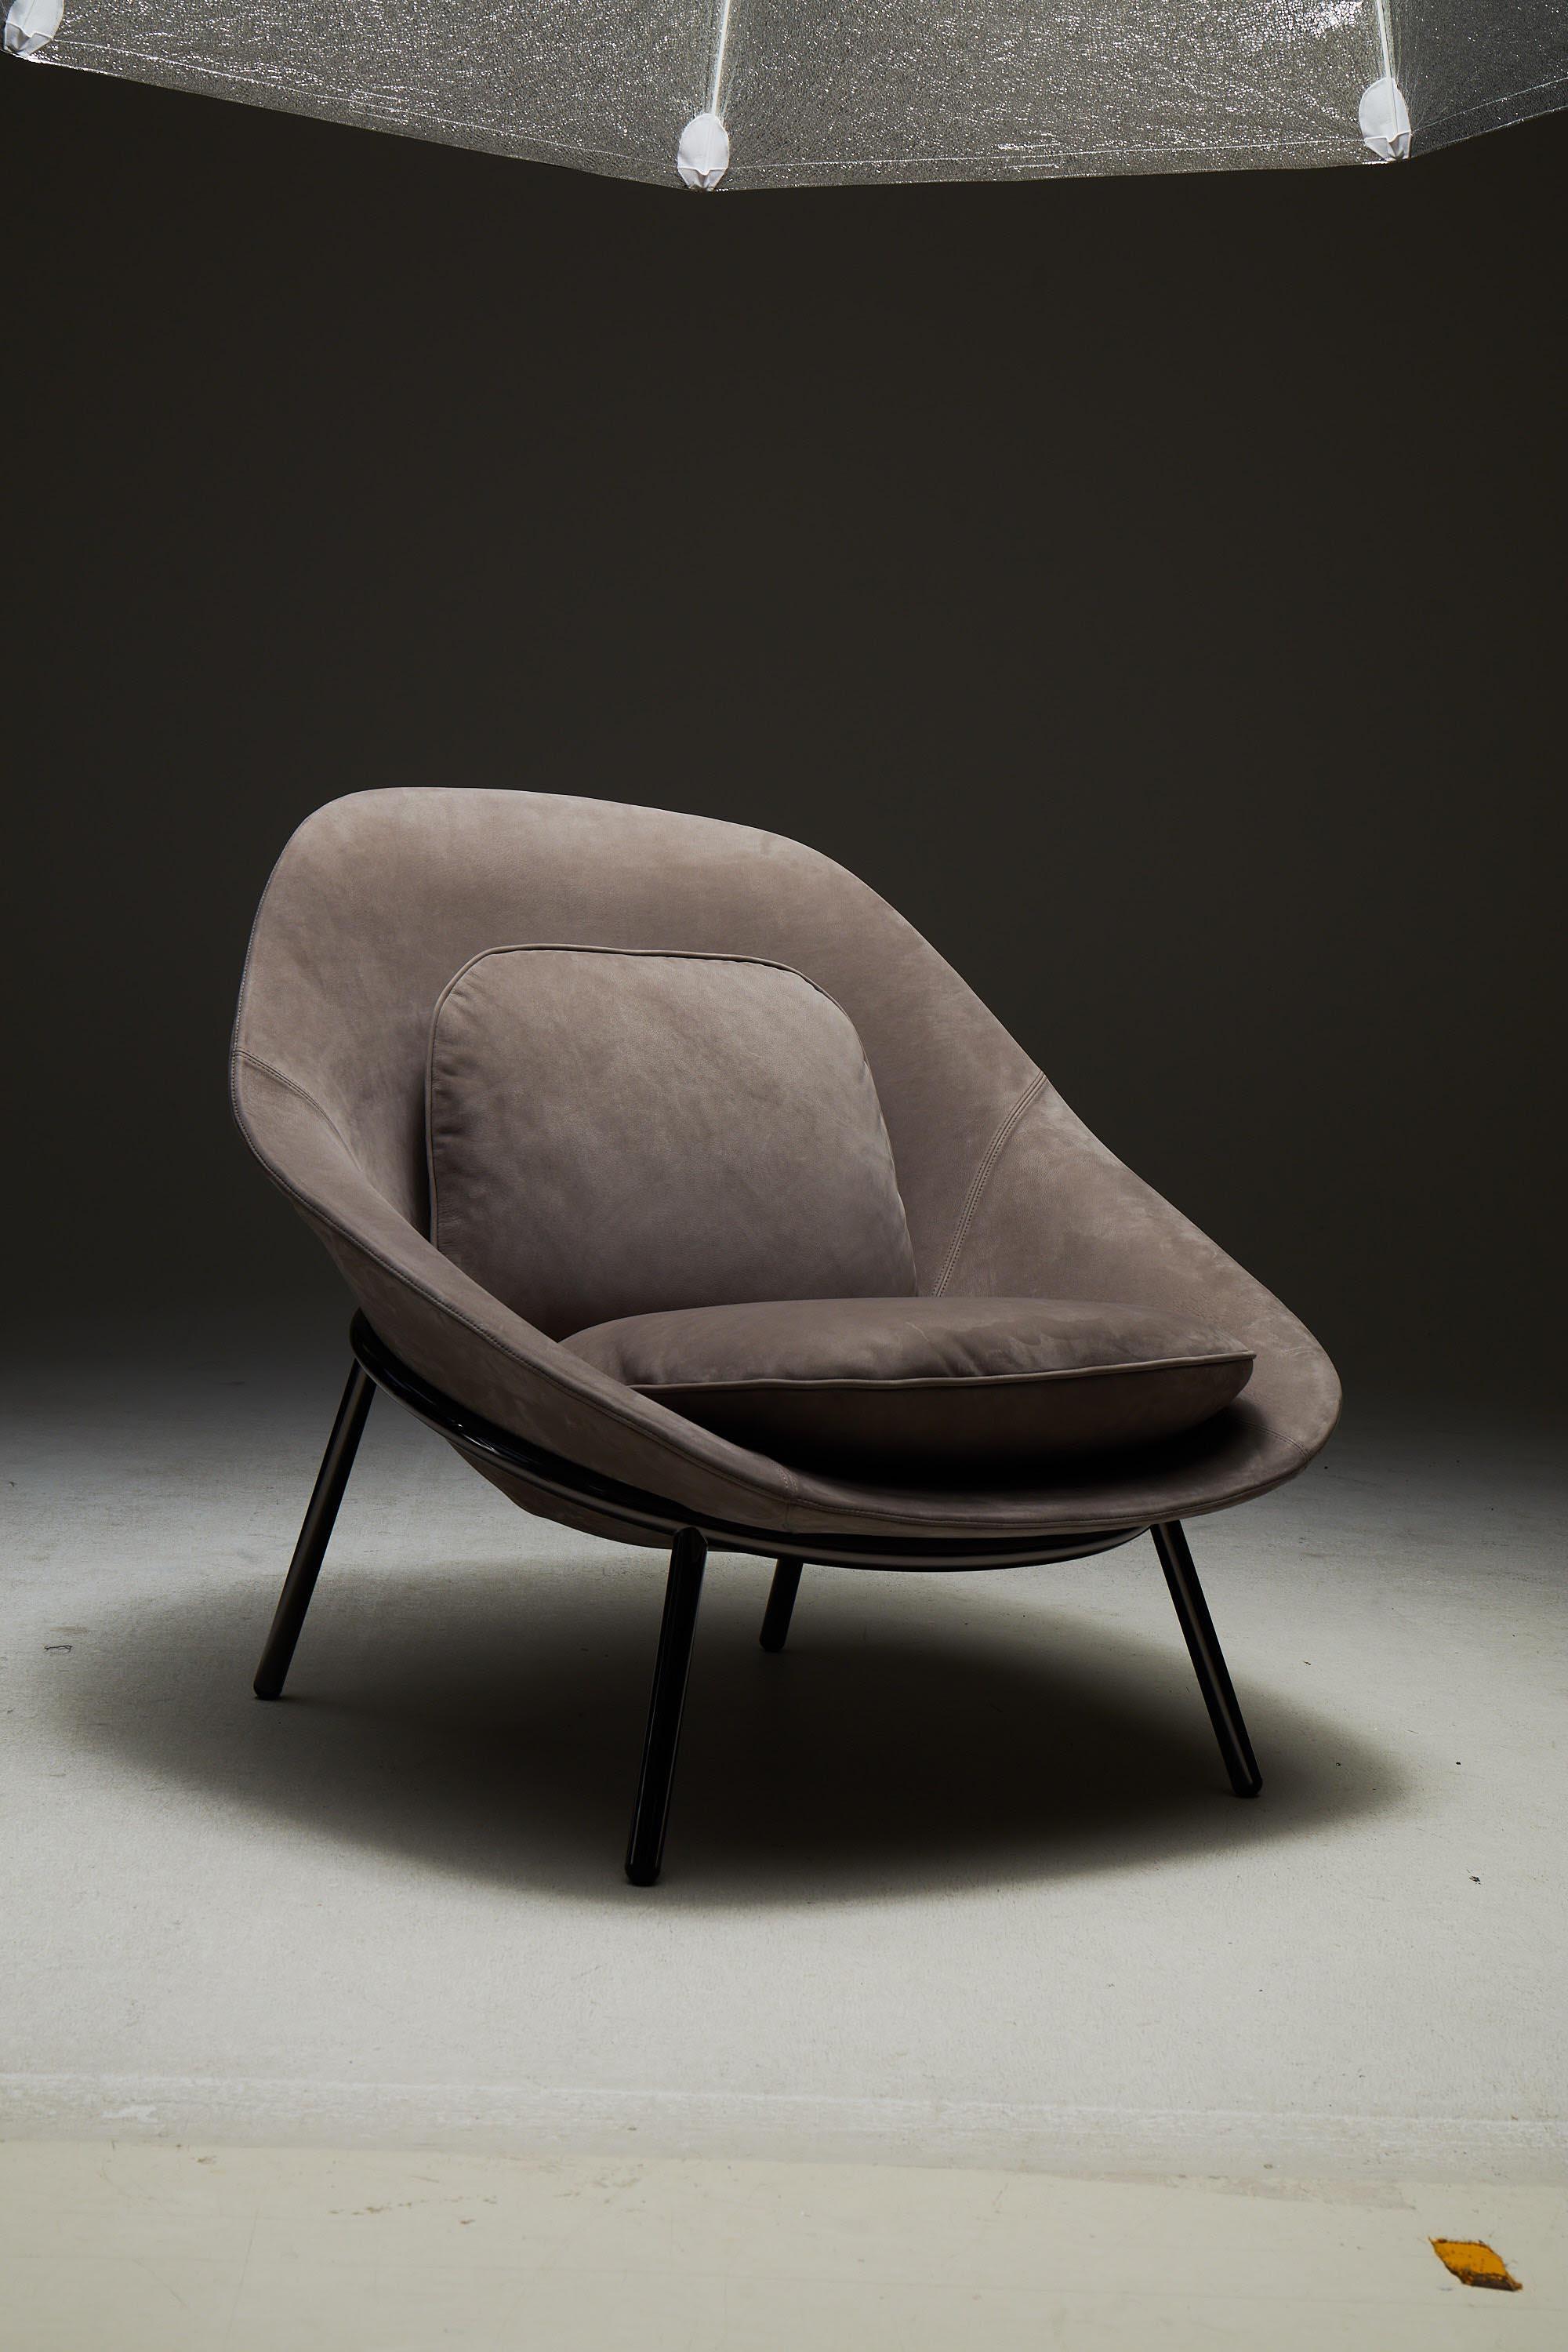 Contemporary Amphora Lounge Chair by Noé Duchaufour Lawrance